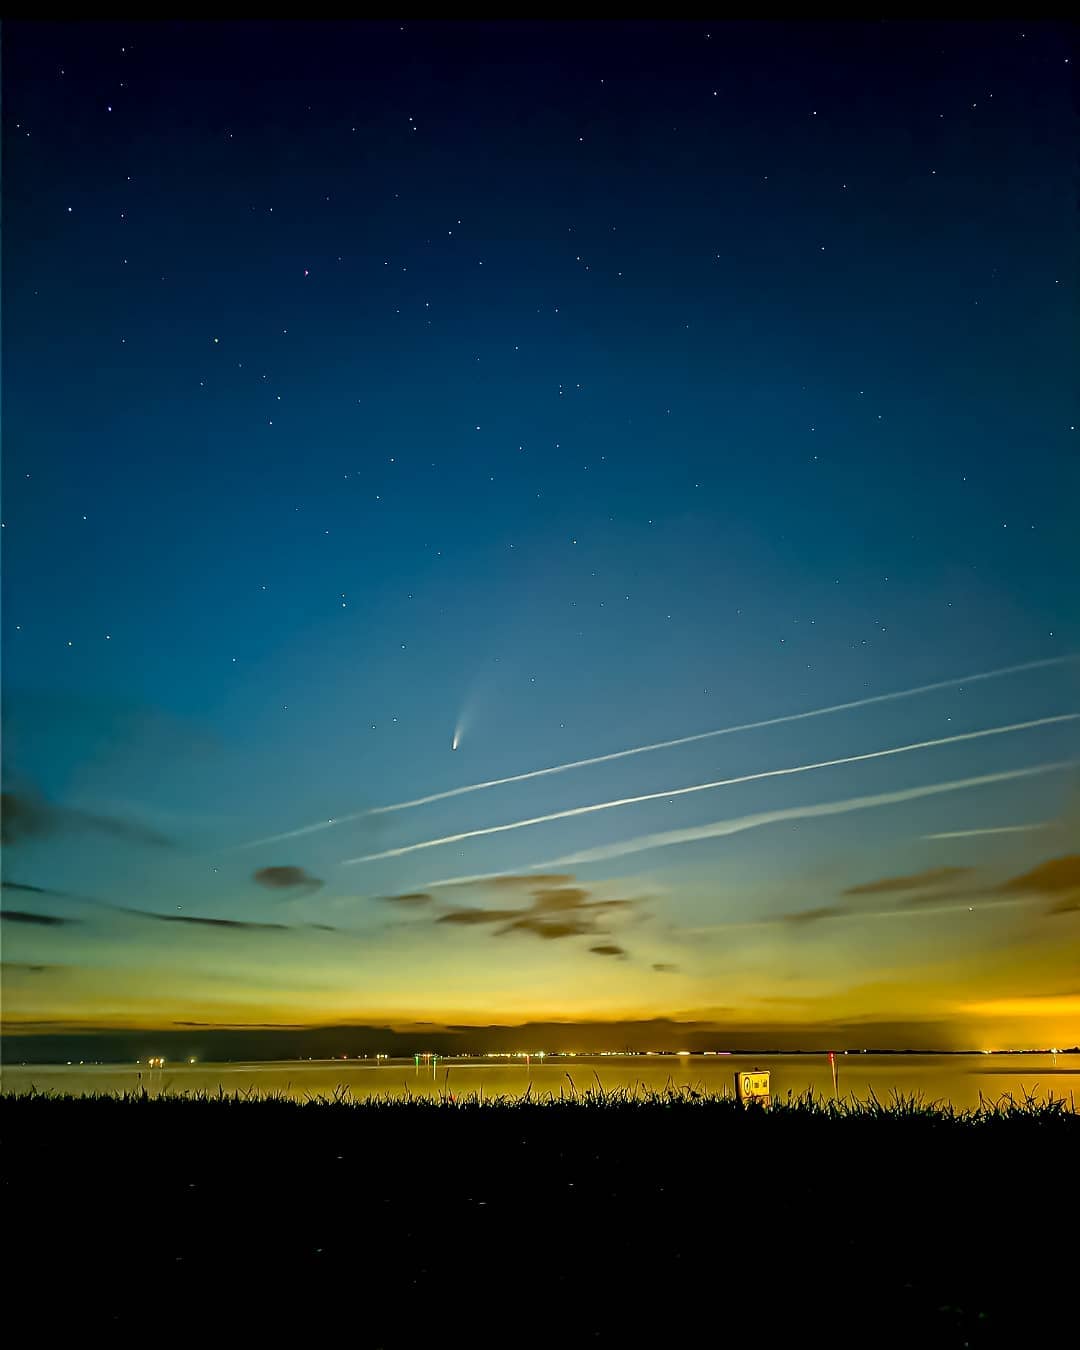 Завораживающие снимки кометы Neowise из разных стран опубликованы в Сети (ФОТО) - фото 19